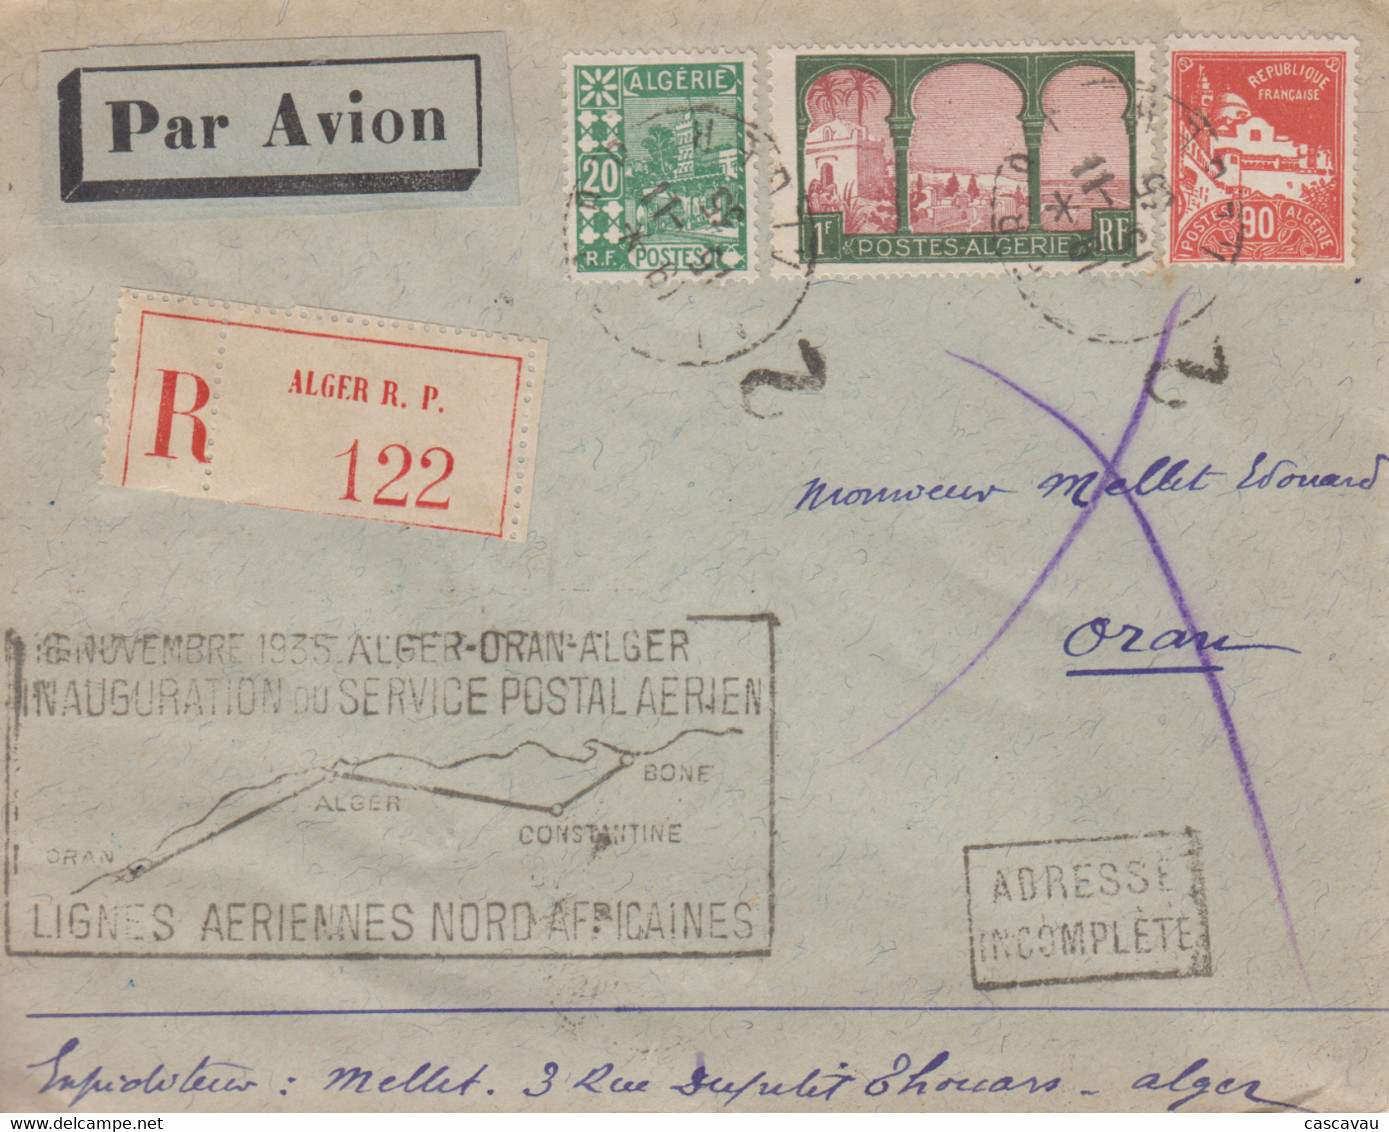 Enveloppe  Recommandée  ALGERIE   Inauguration   Service  Postal   Aérien    ALGER - ORAN - ALGER   1935 - Poste Aérienne